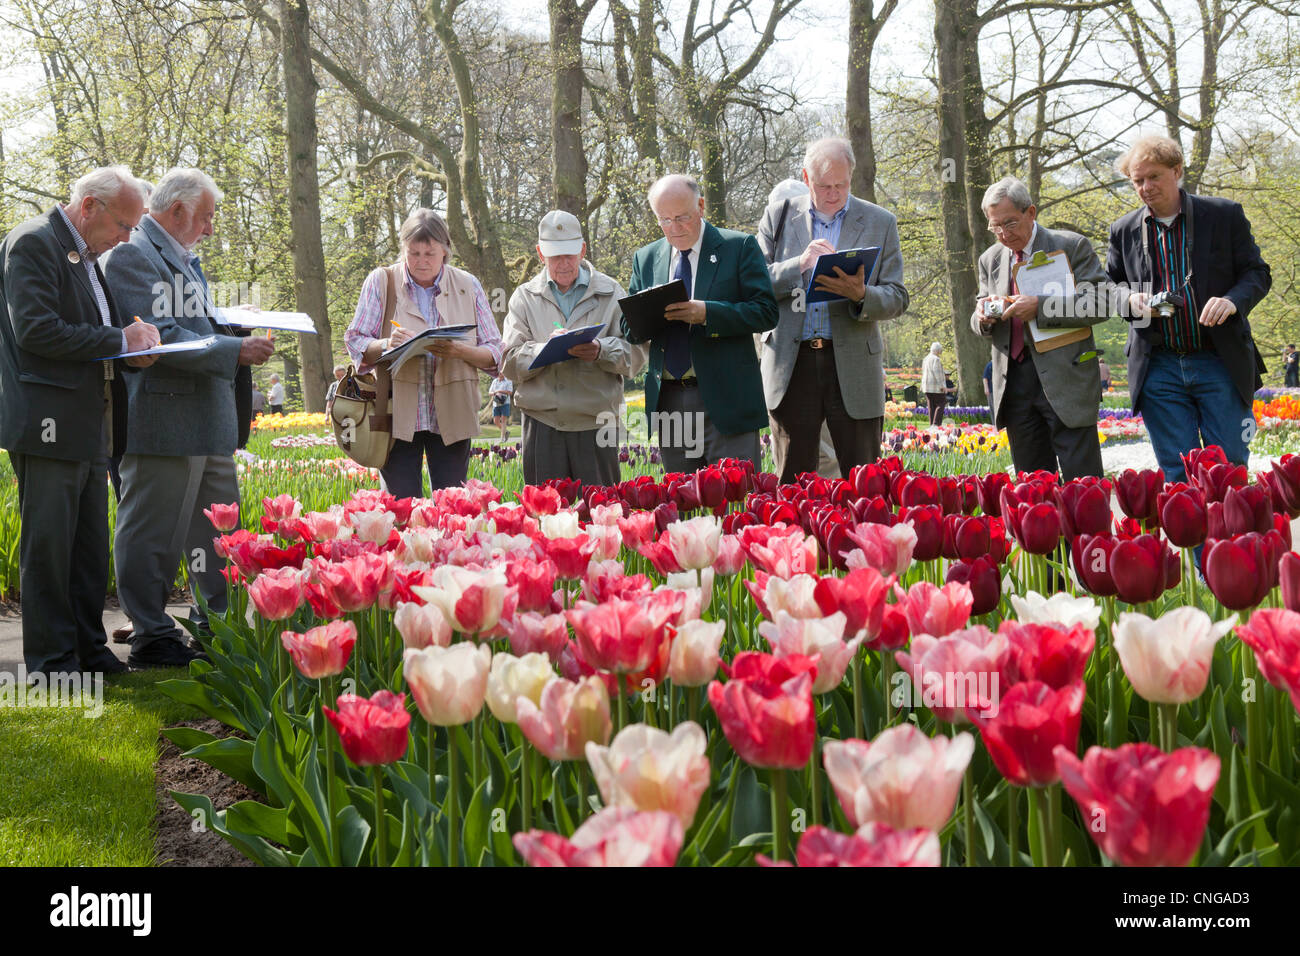 Keukenhof, juges de la RHS (Royal Horticultural Society) de Kew Garden venir pour juger de tulipes et d'autres plantes à bulbe. Banque D'Images